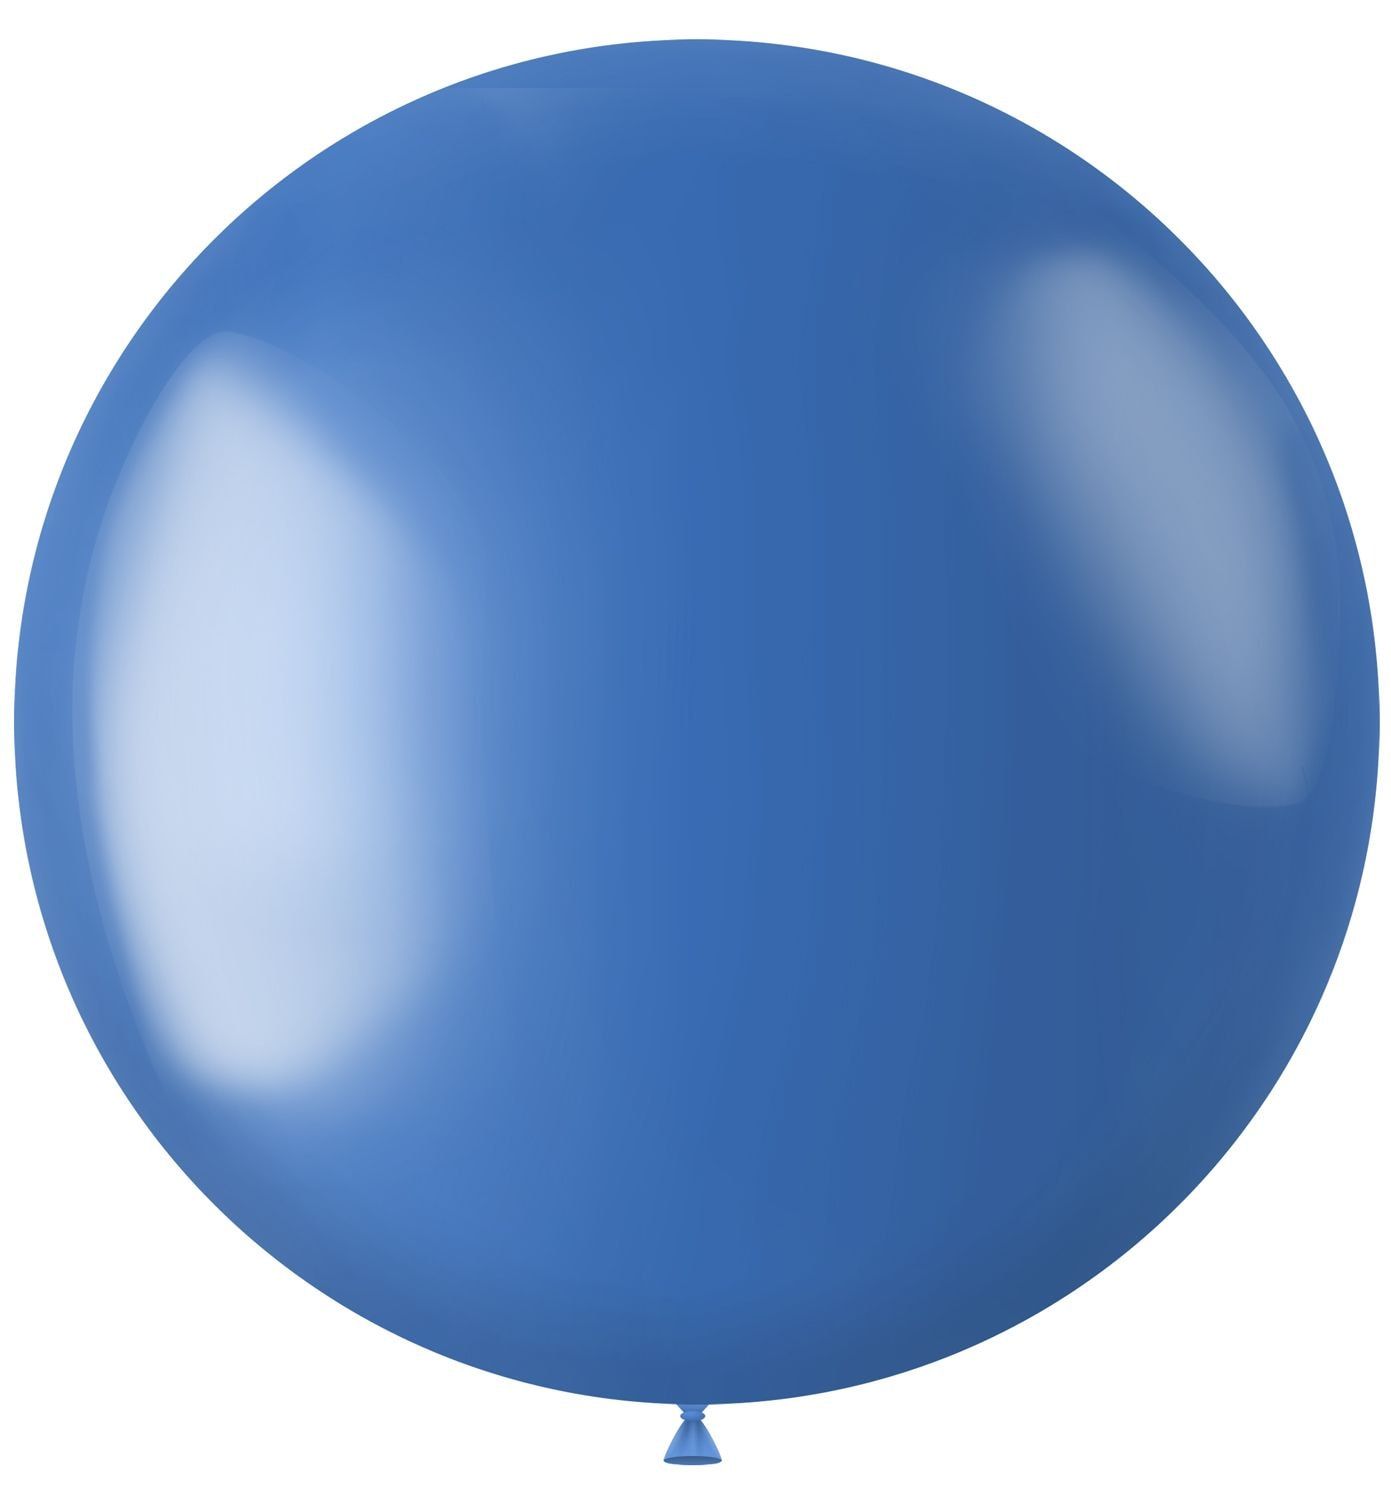 Metallic XL ballon blauw